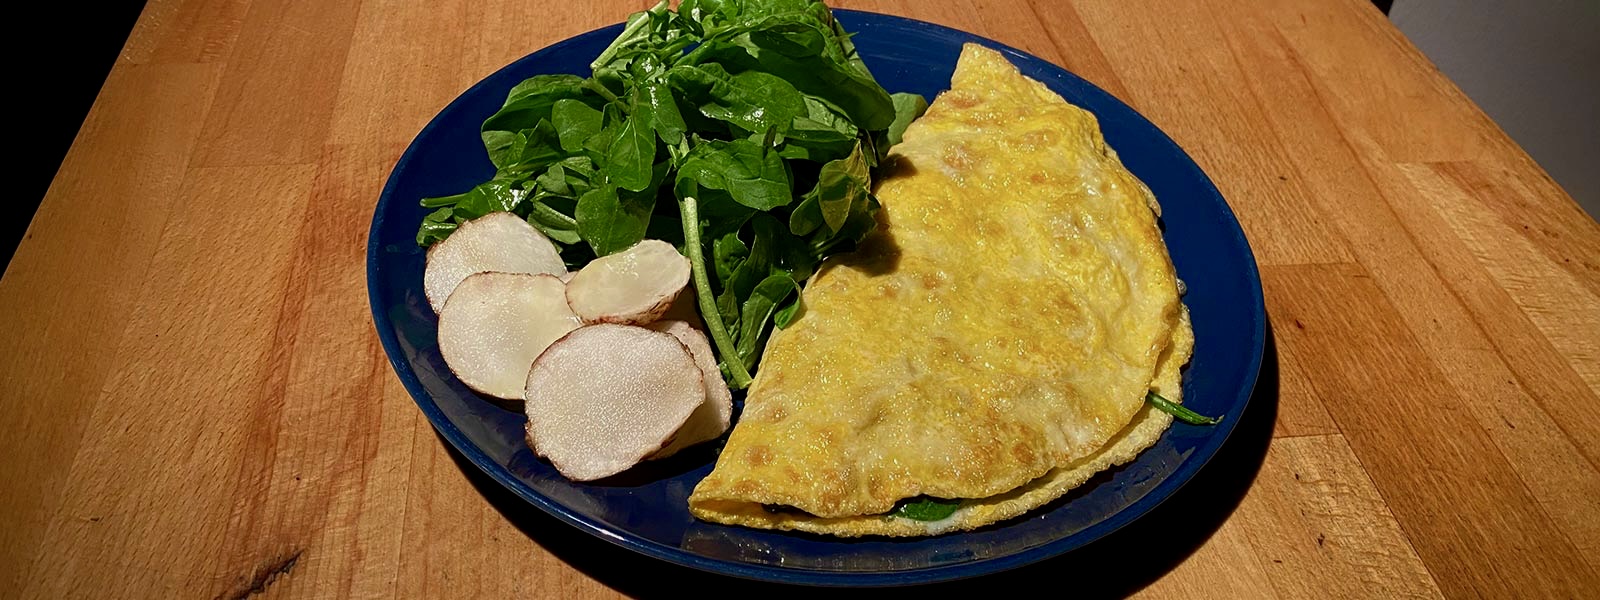 kis-sebzeli-omlet.jpg